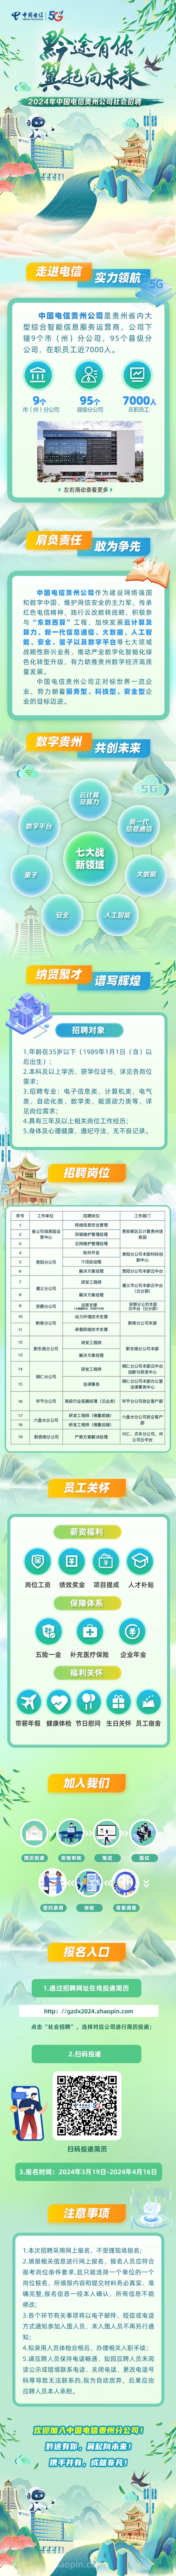 2024年中国电信贵州分公司社会招聘若干人公告|截止4月16日报名